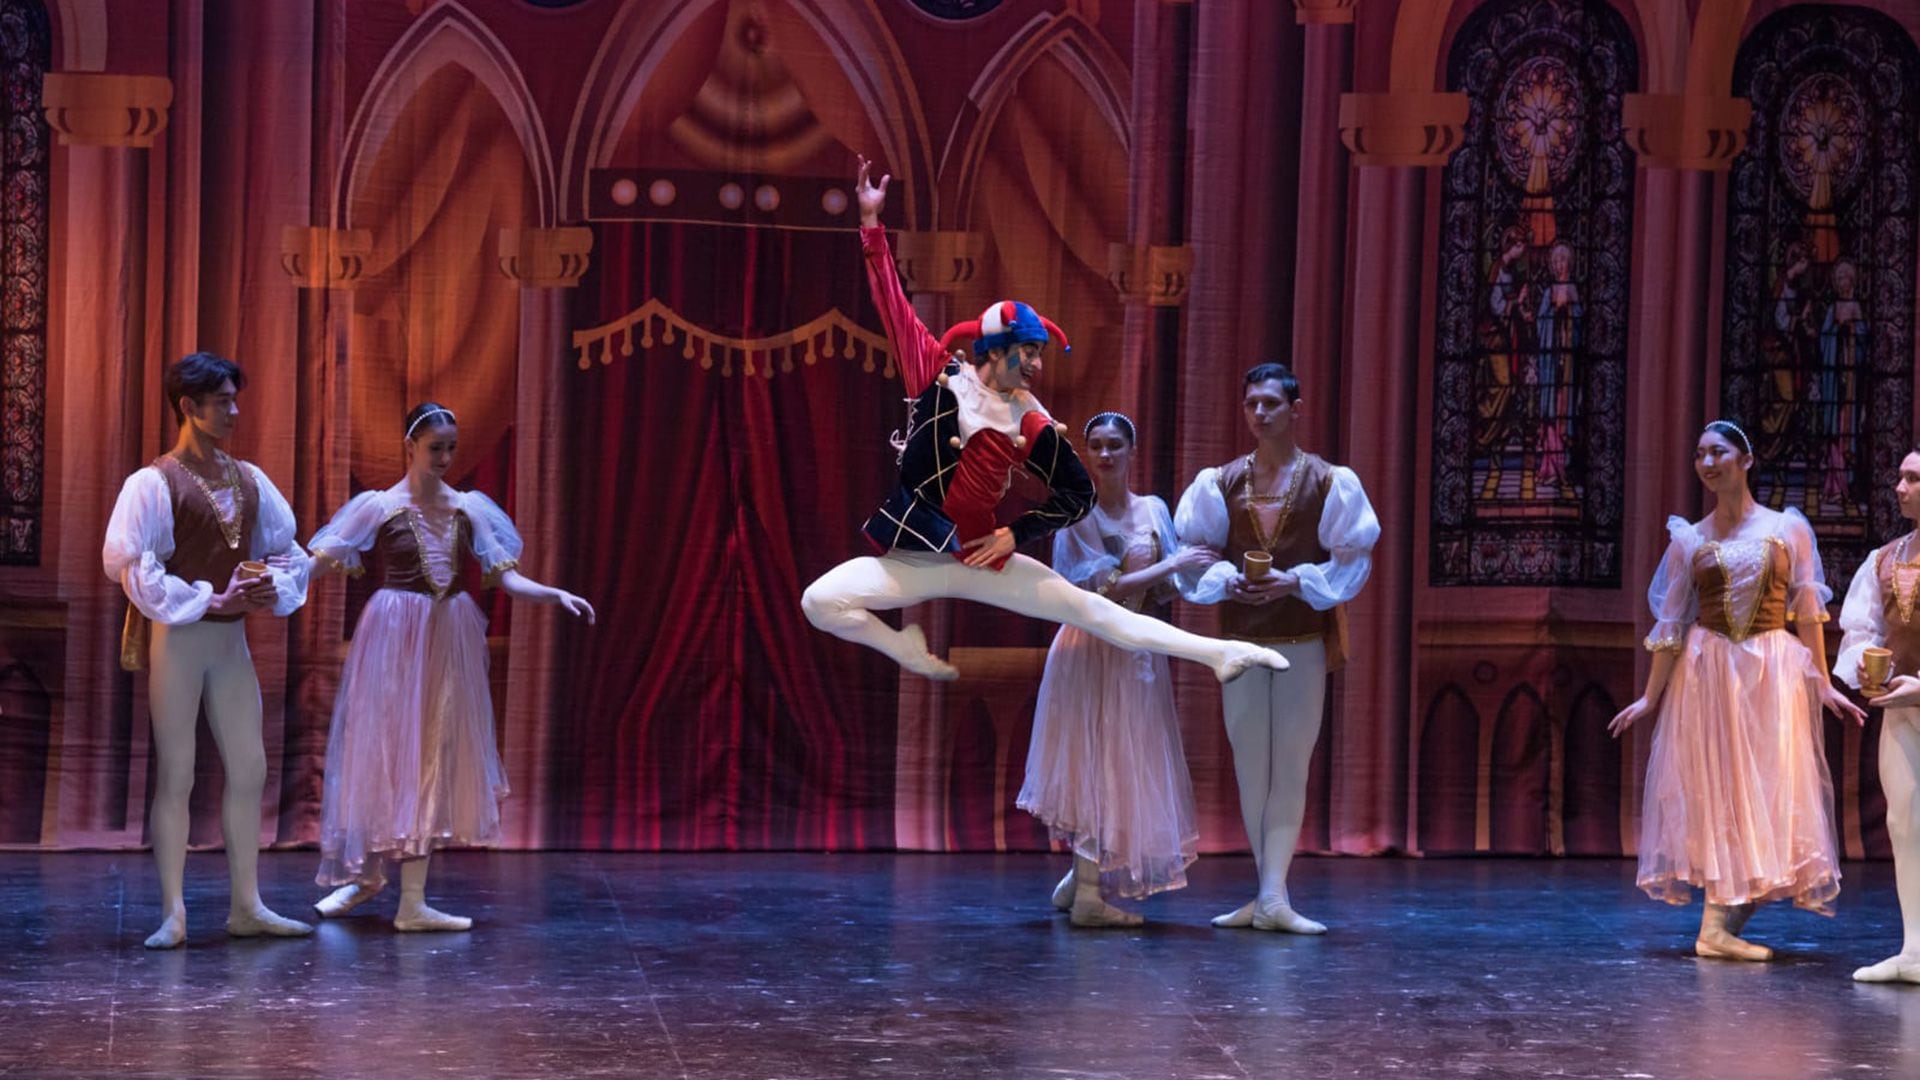 La coreografía de "El lago de los cisnes" requiere de los bailarines una gran capacidad técnica para la interpretación de los personajes